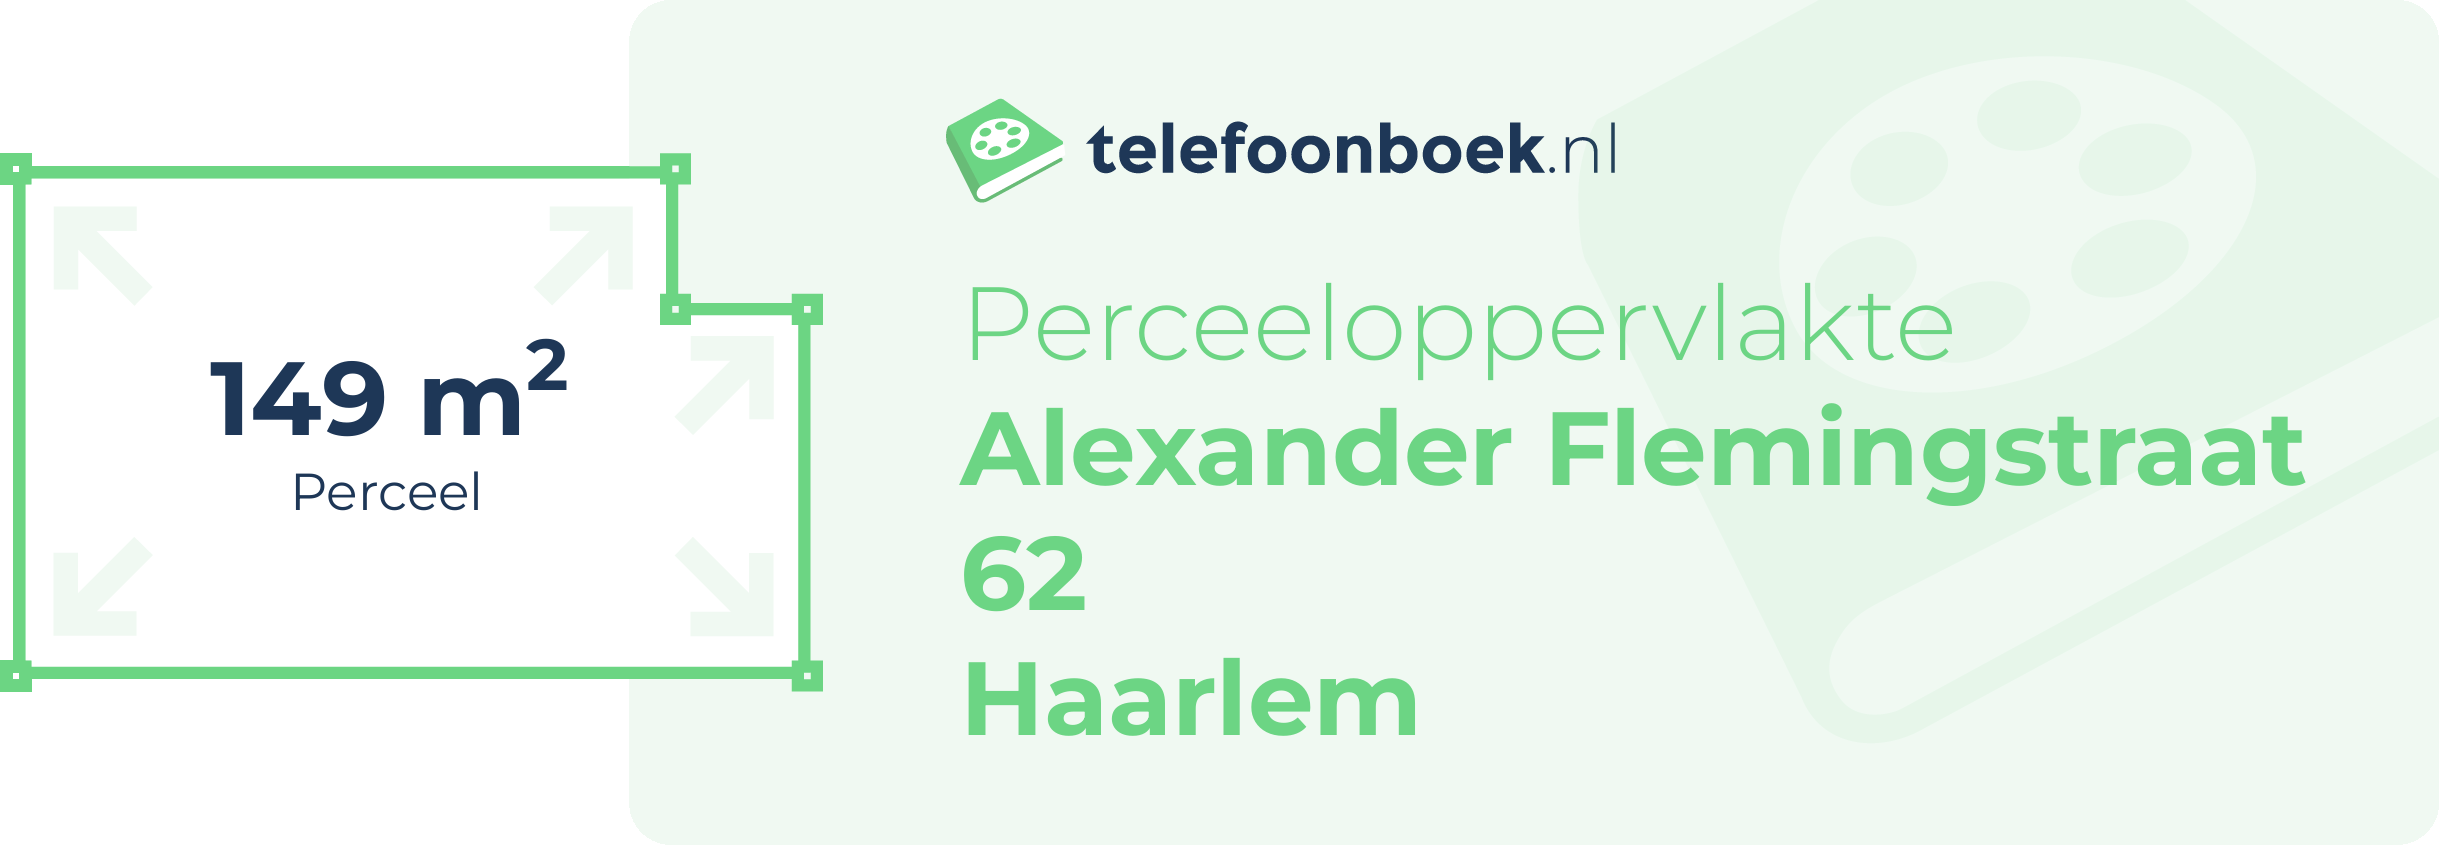 Perceeloppervlakte Alexander Flemingstraat 62 Haarlem